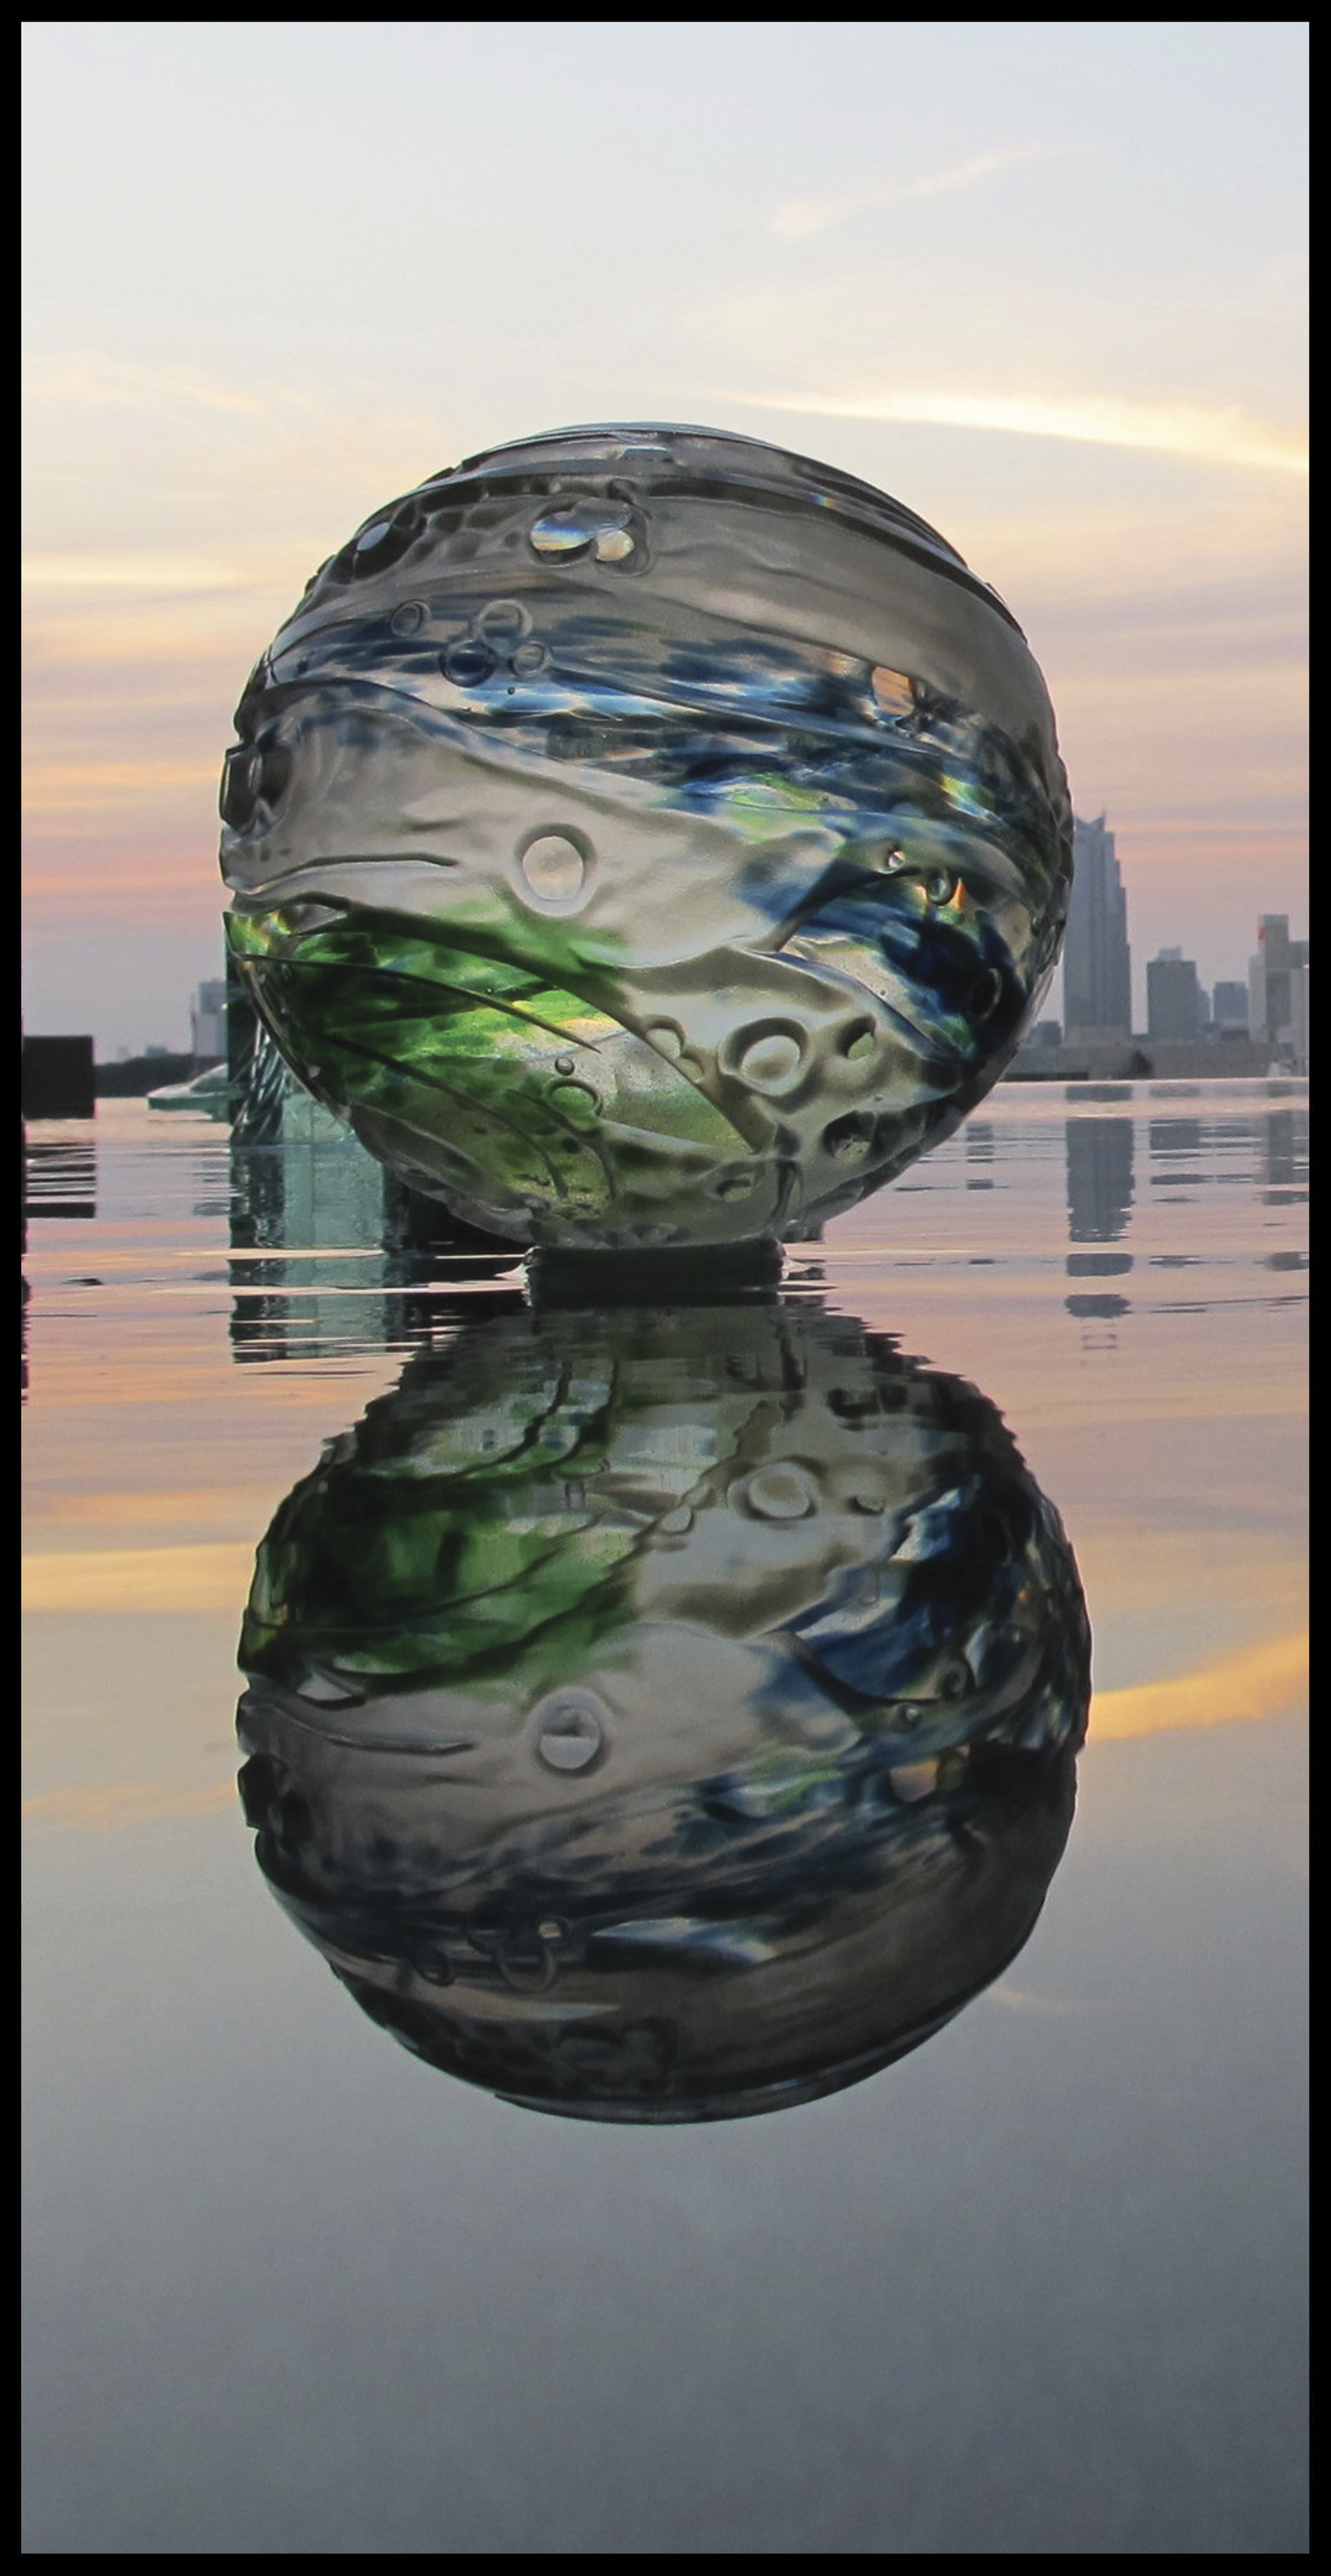  Globo de cristal soplado y tallado, instalado sobre un plano de agua con su reflejo.